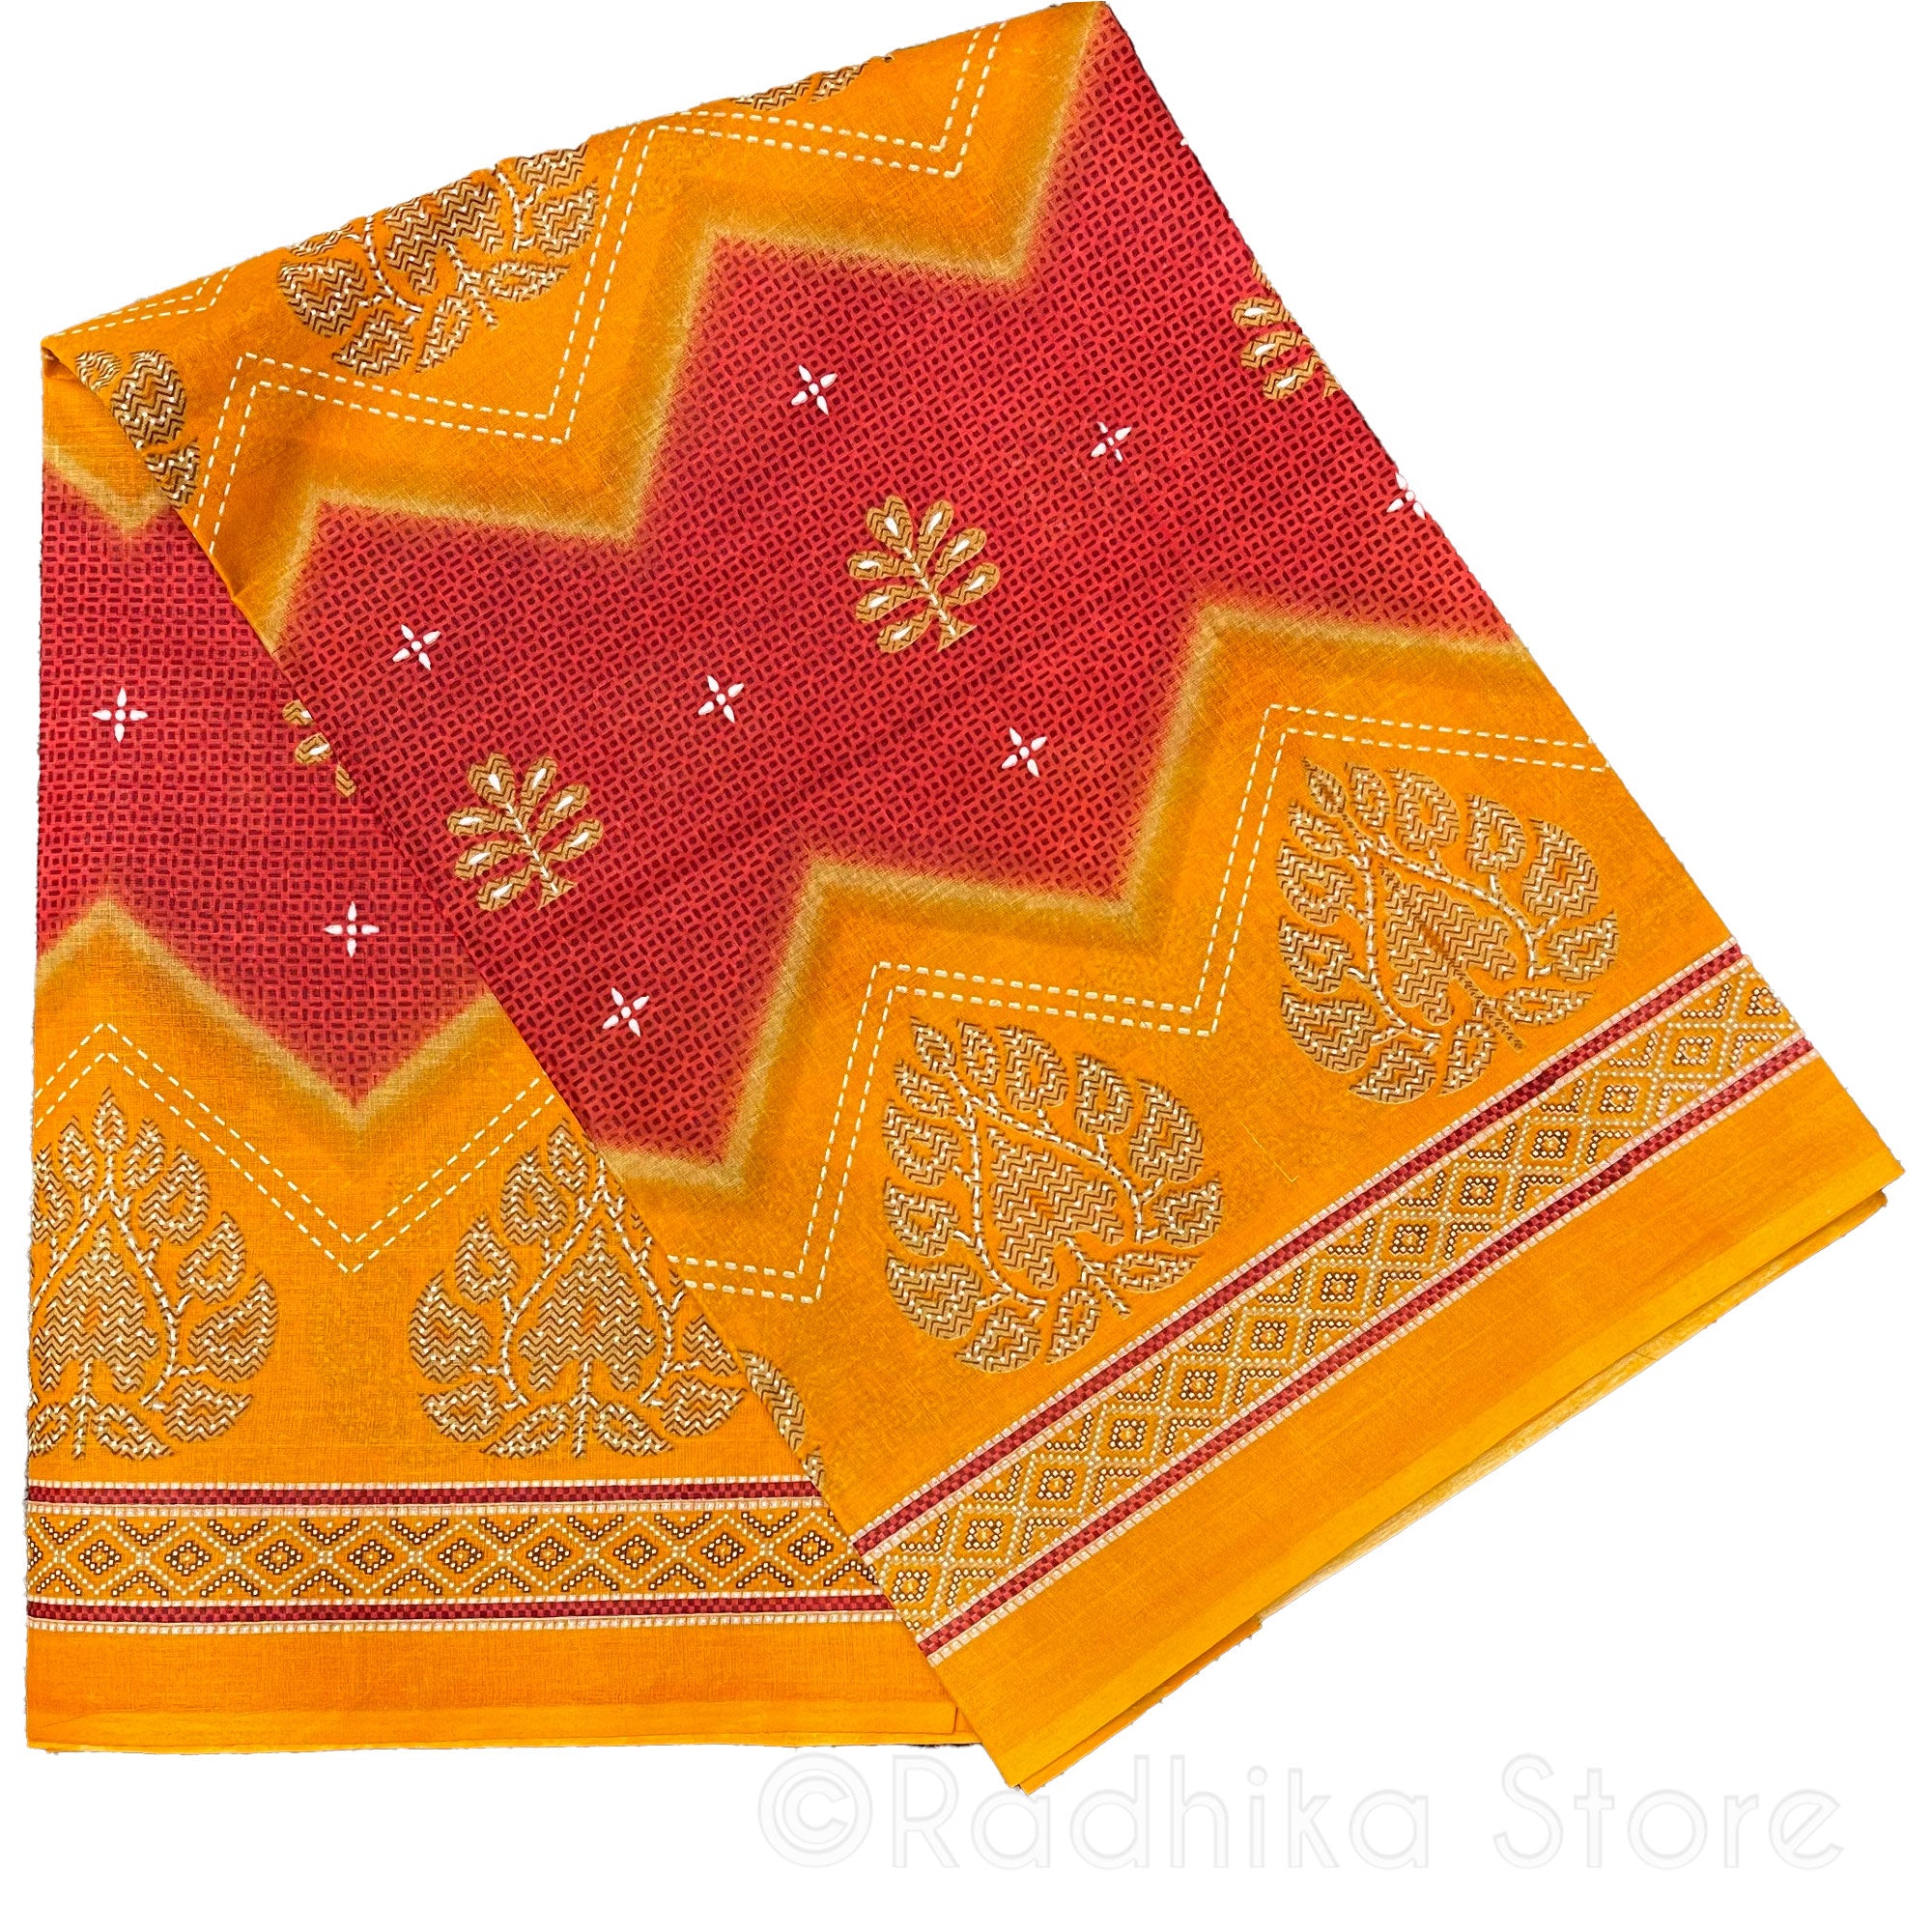 Vedic Designs -  Marigold and Orange/Red- Cotton Saree